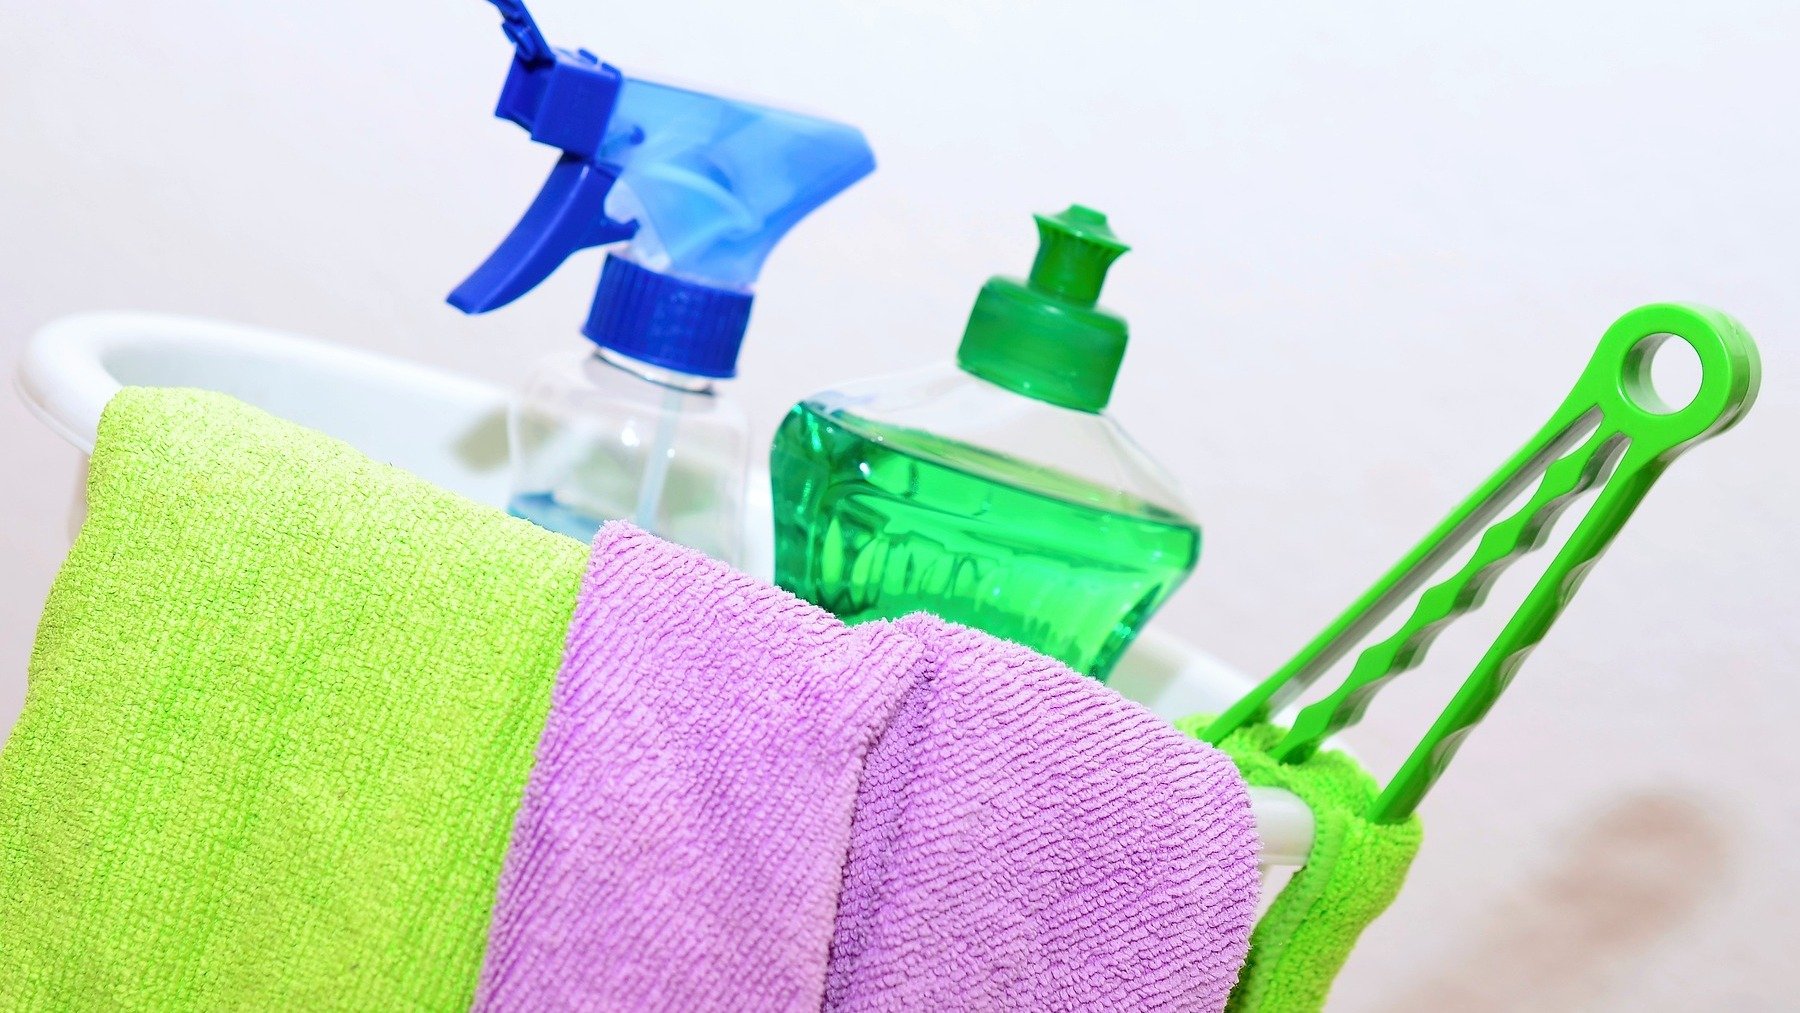 Trucos limpieza: La fórmula correcta de limpiar las bayetas y